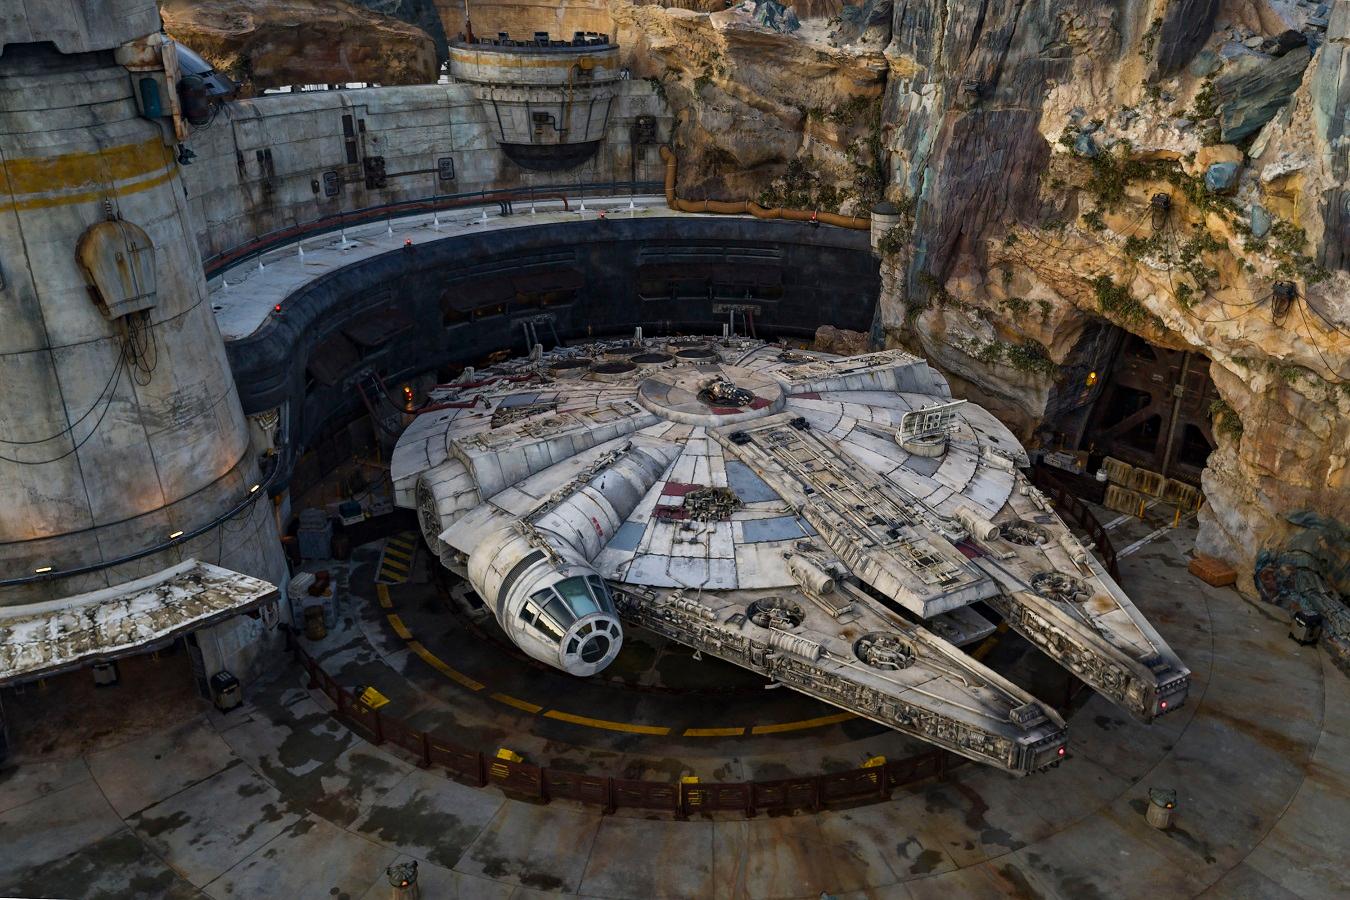 Já pensou em ver de perto e pilotar a Millennium Falcon? Isso é possível na área Star Wars: Galaxy's Edge no Disney’s Hollywood Studios em Walt Disney World Resort na Flórida